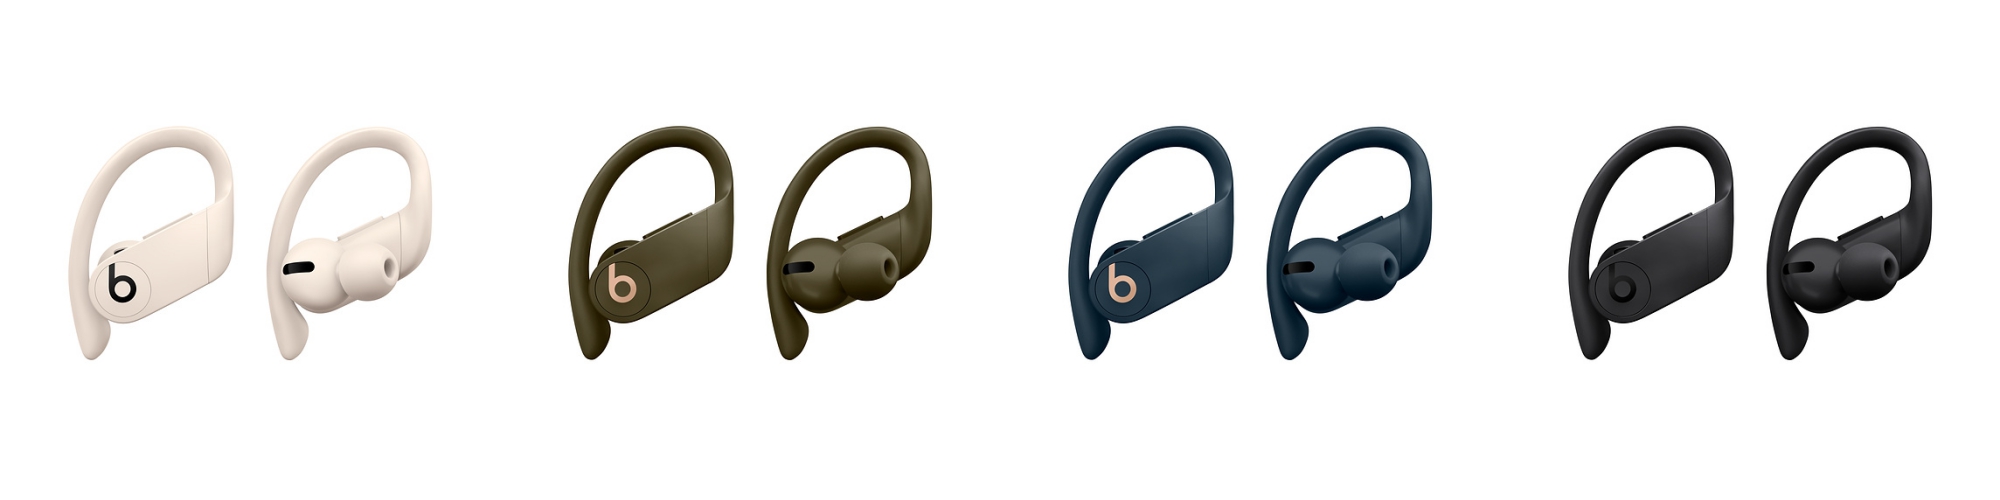 Beats Powerbeats Pro kablosuz kulaklıklar Apple H1 çipiyle tanıtıldı